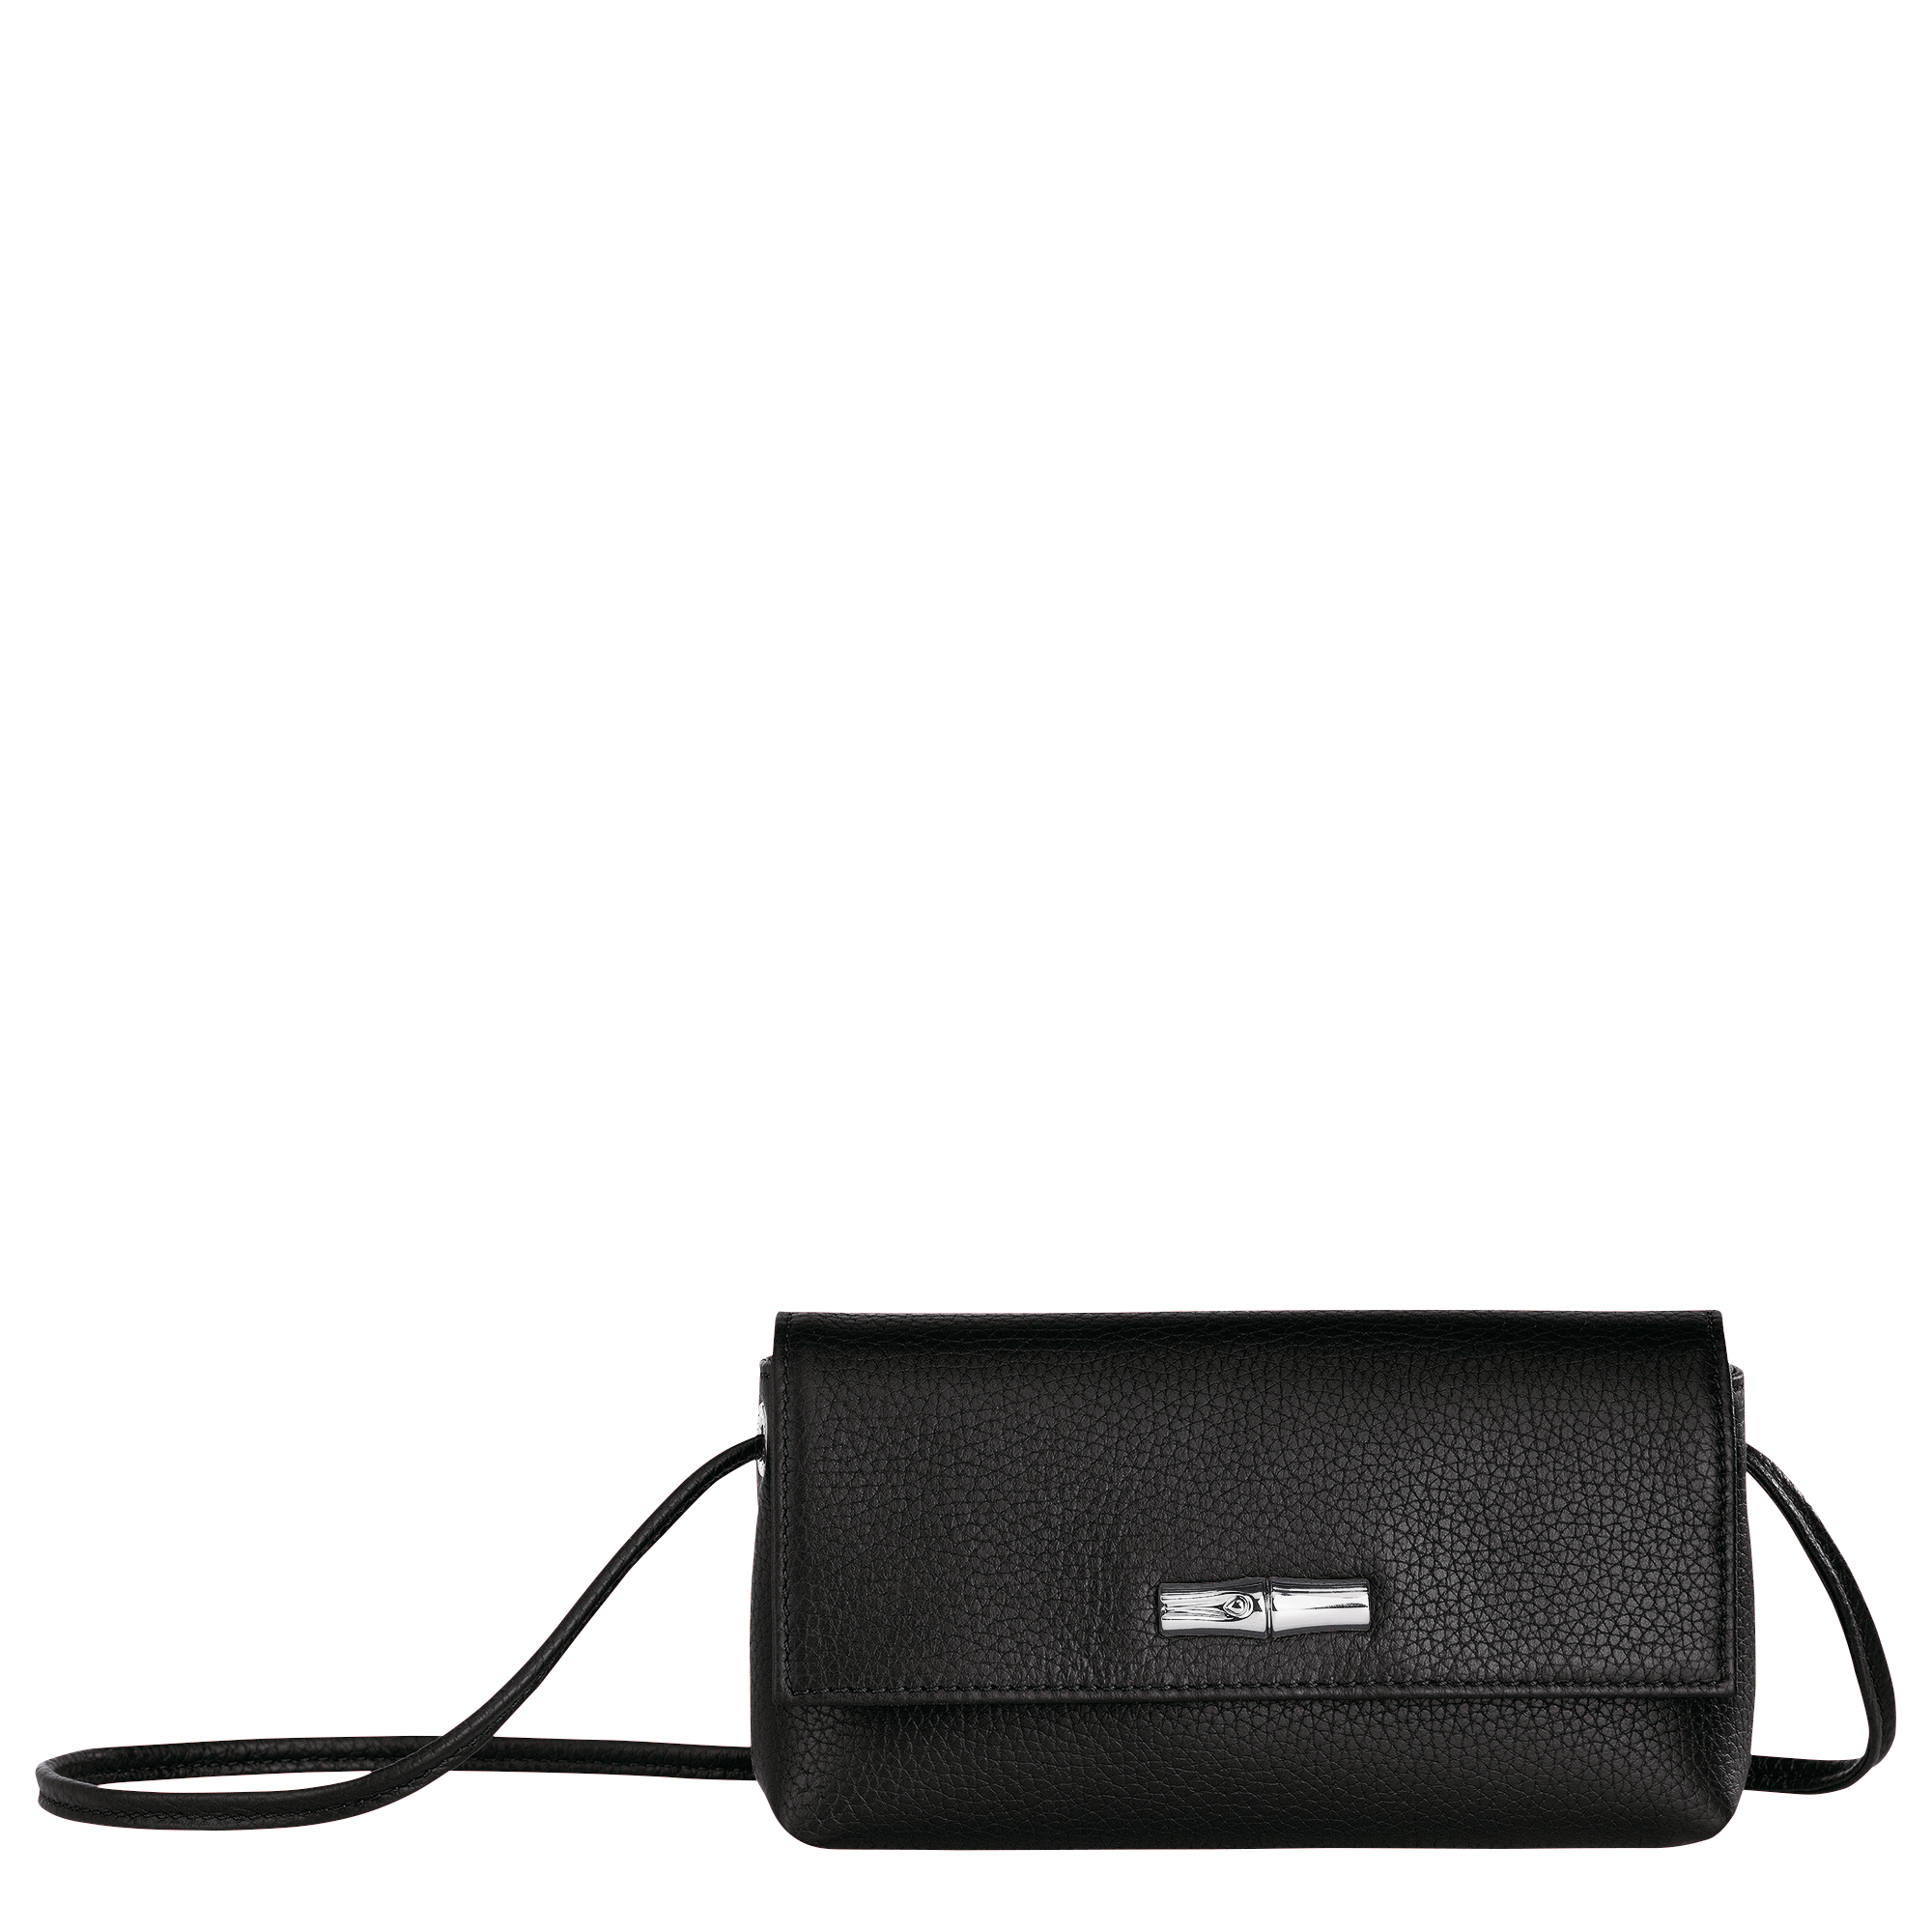 Roseau Essential L Tote bag Black - Leather (L2686968001)